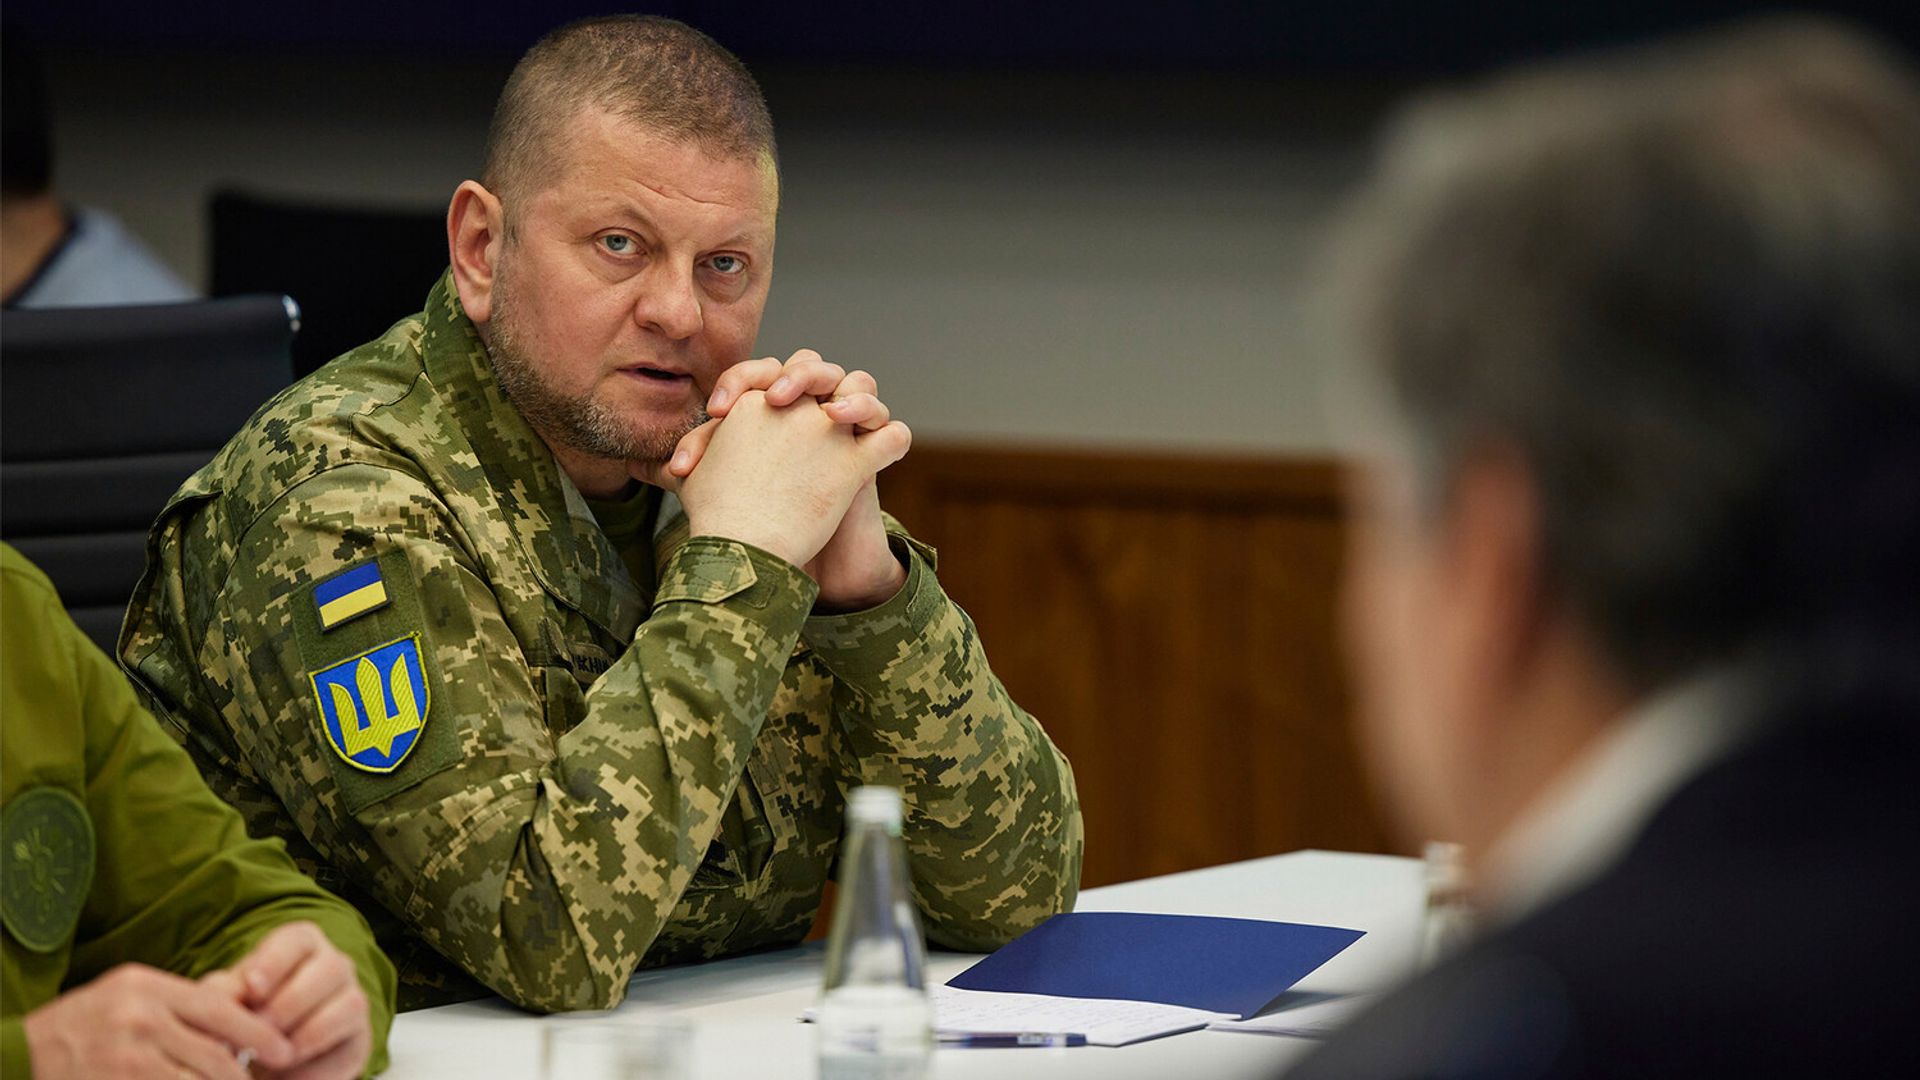 Ukrainian military commander Valeriy Zaluzhny